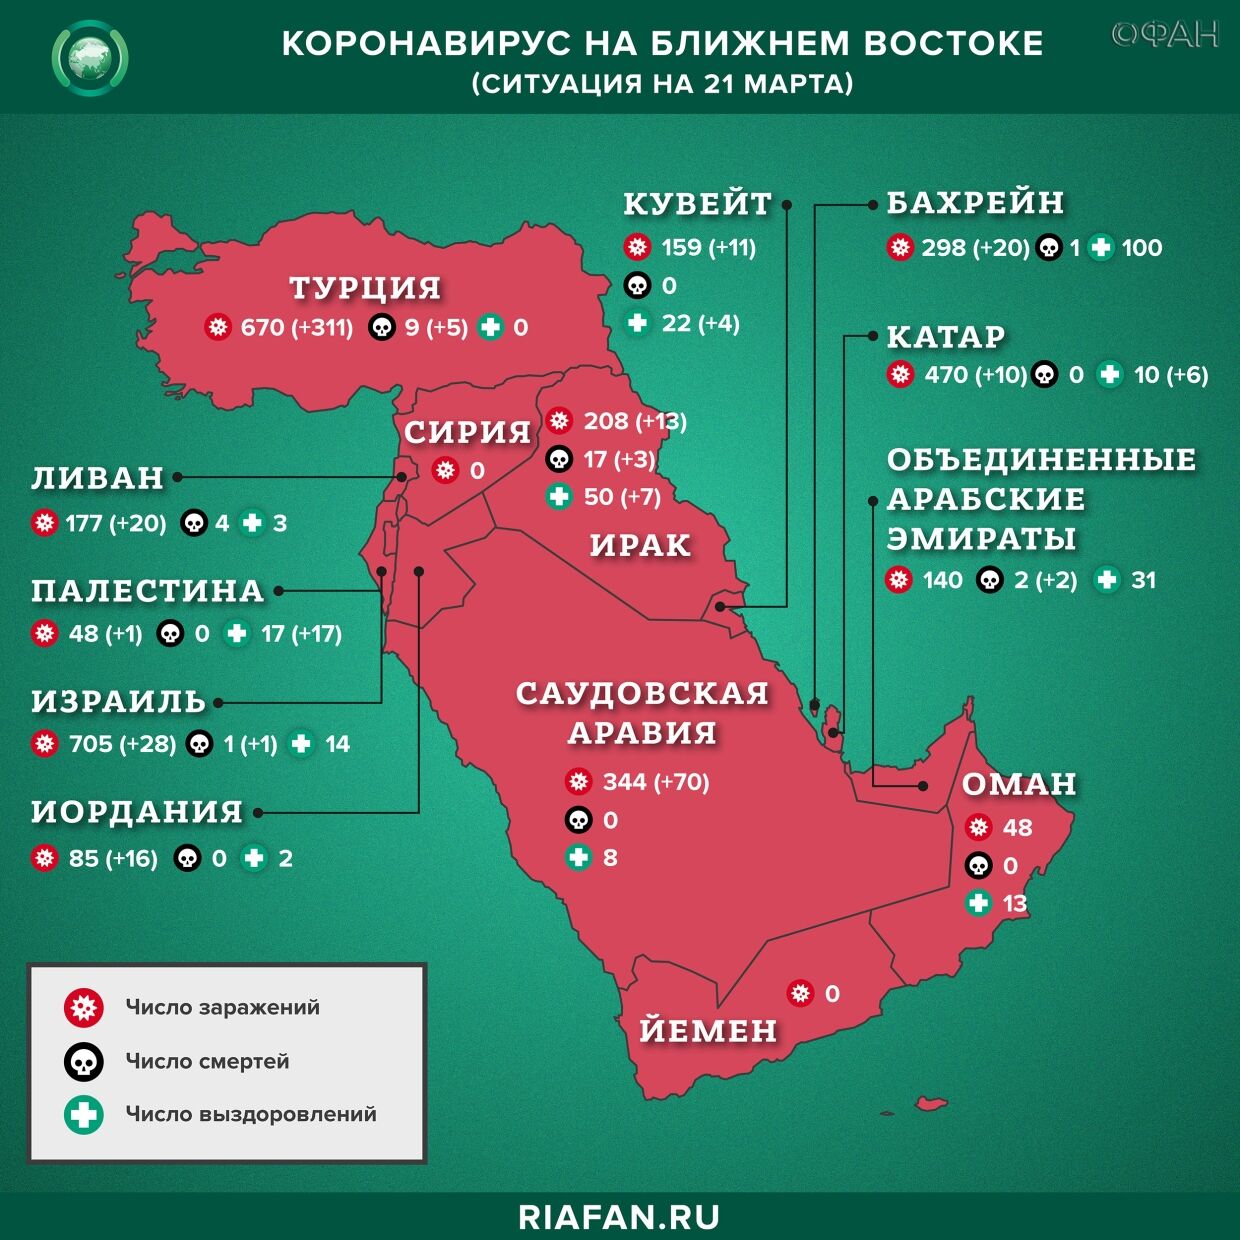 Коронавирус в арабском мире: суточная сводка по состоянию на 10.00 21 марта 2020 года